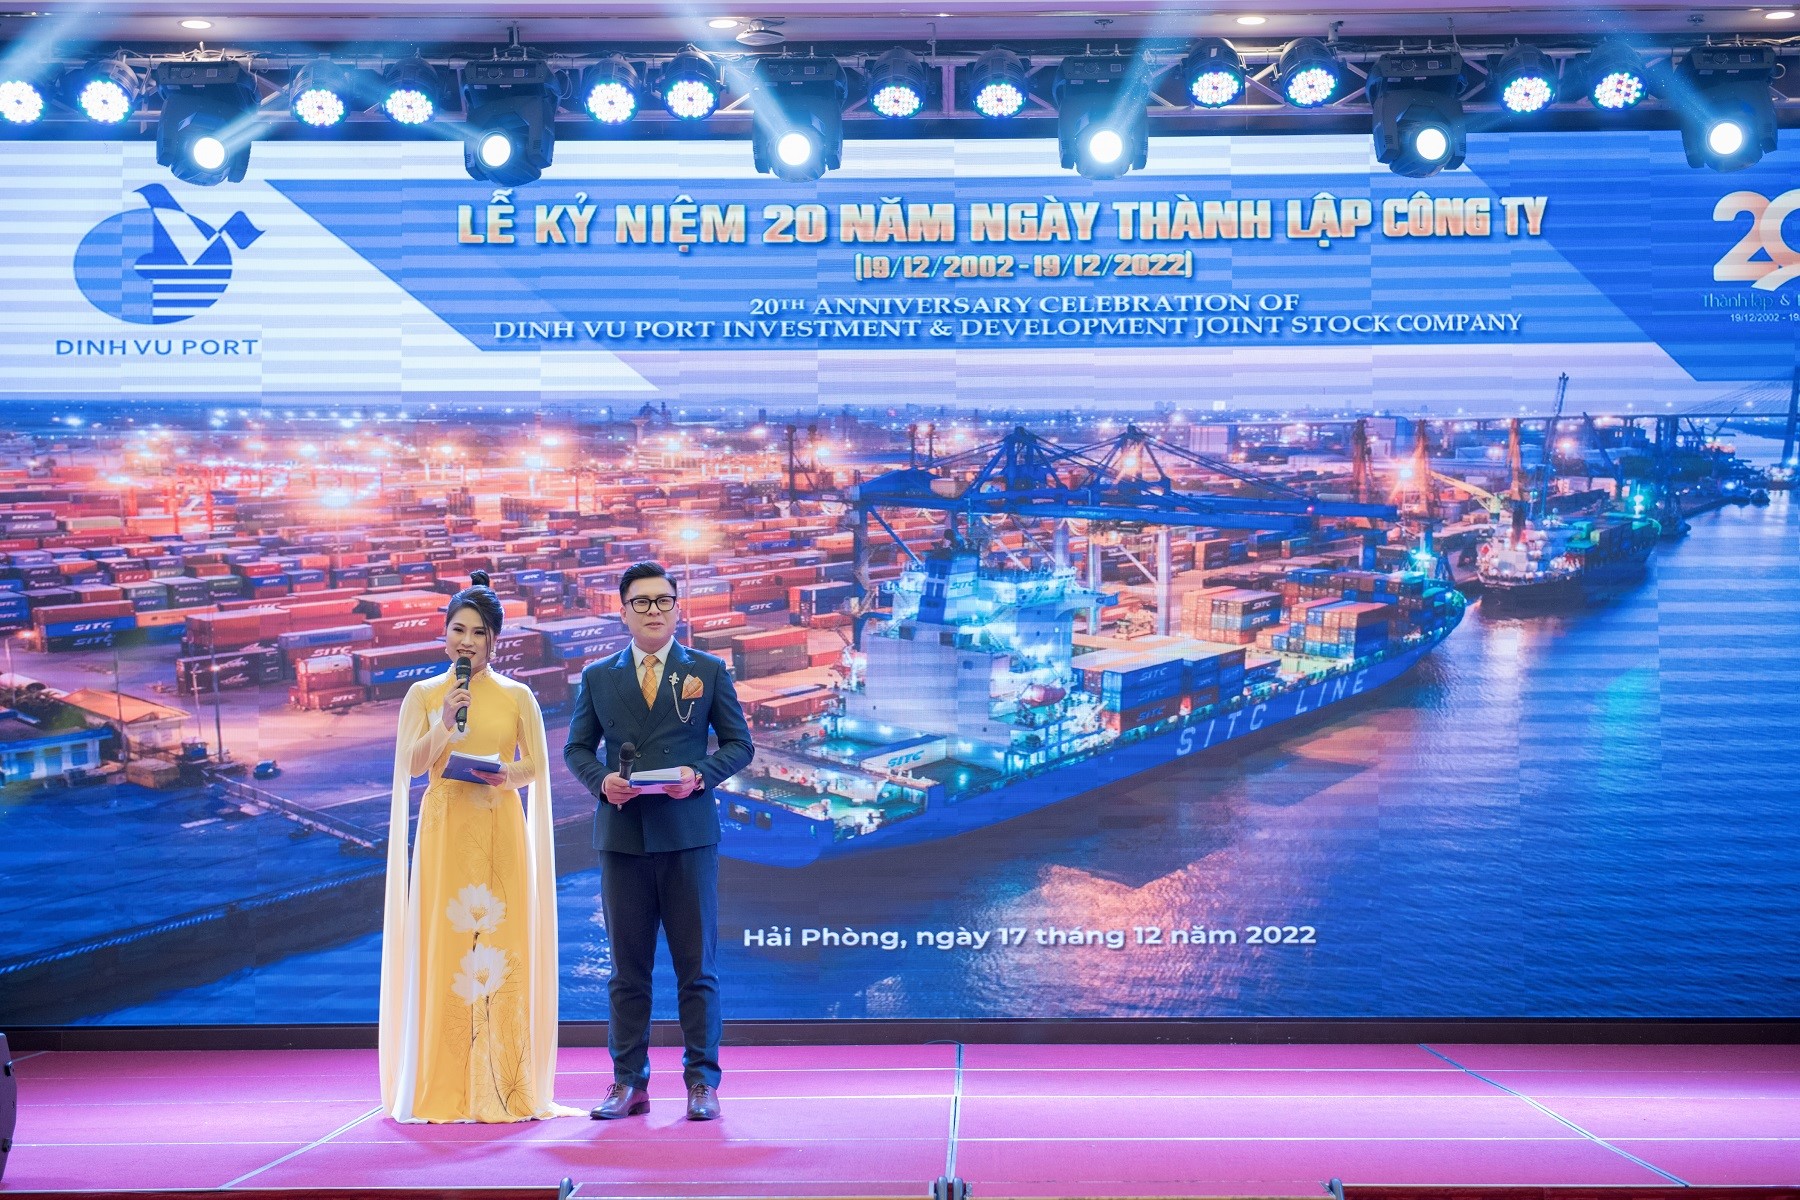 MC Thùy Dương & MC Thanh Liêm (VTC) dẫn dắt chương trình